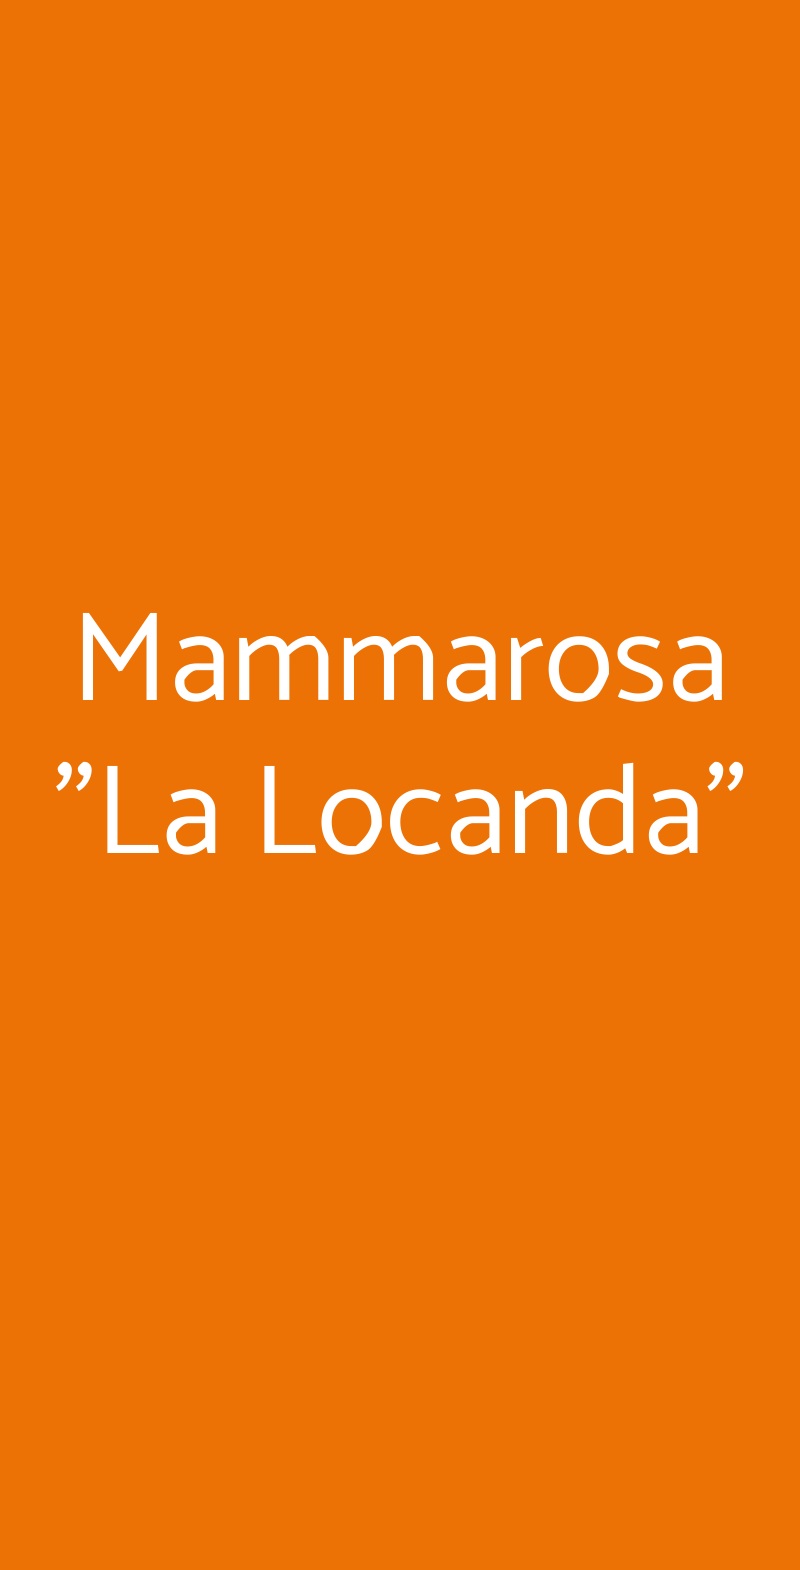 Mammarosa "La Locanda" San Casciano in Val di Pesa menù 1 pagina